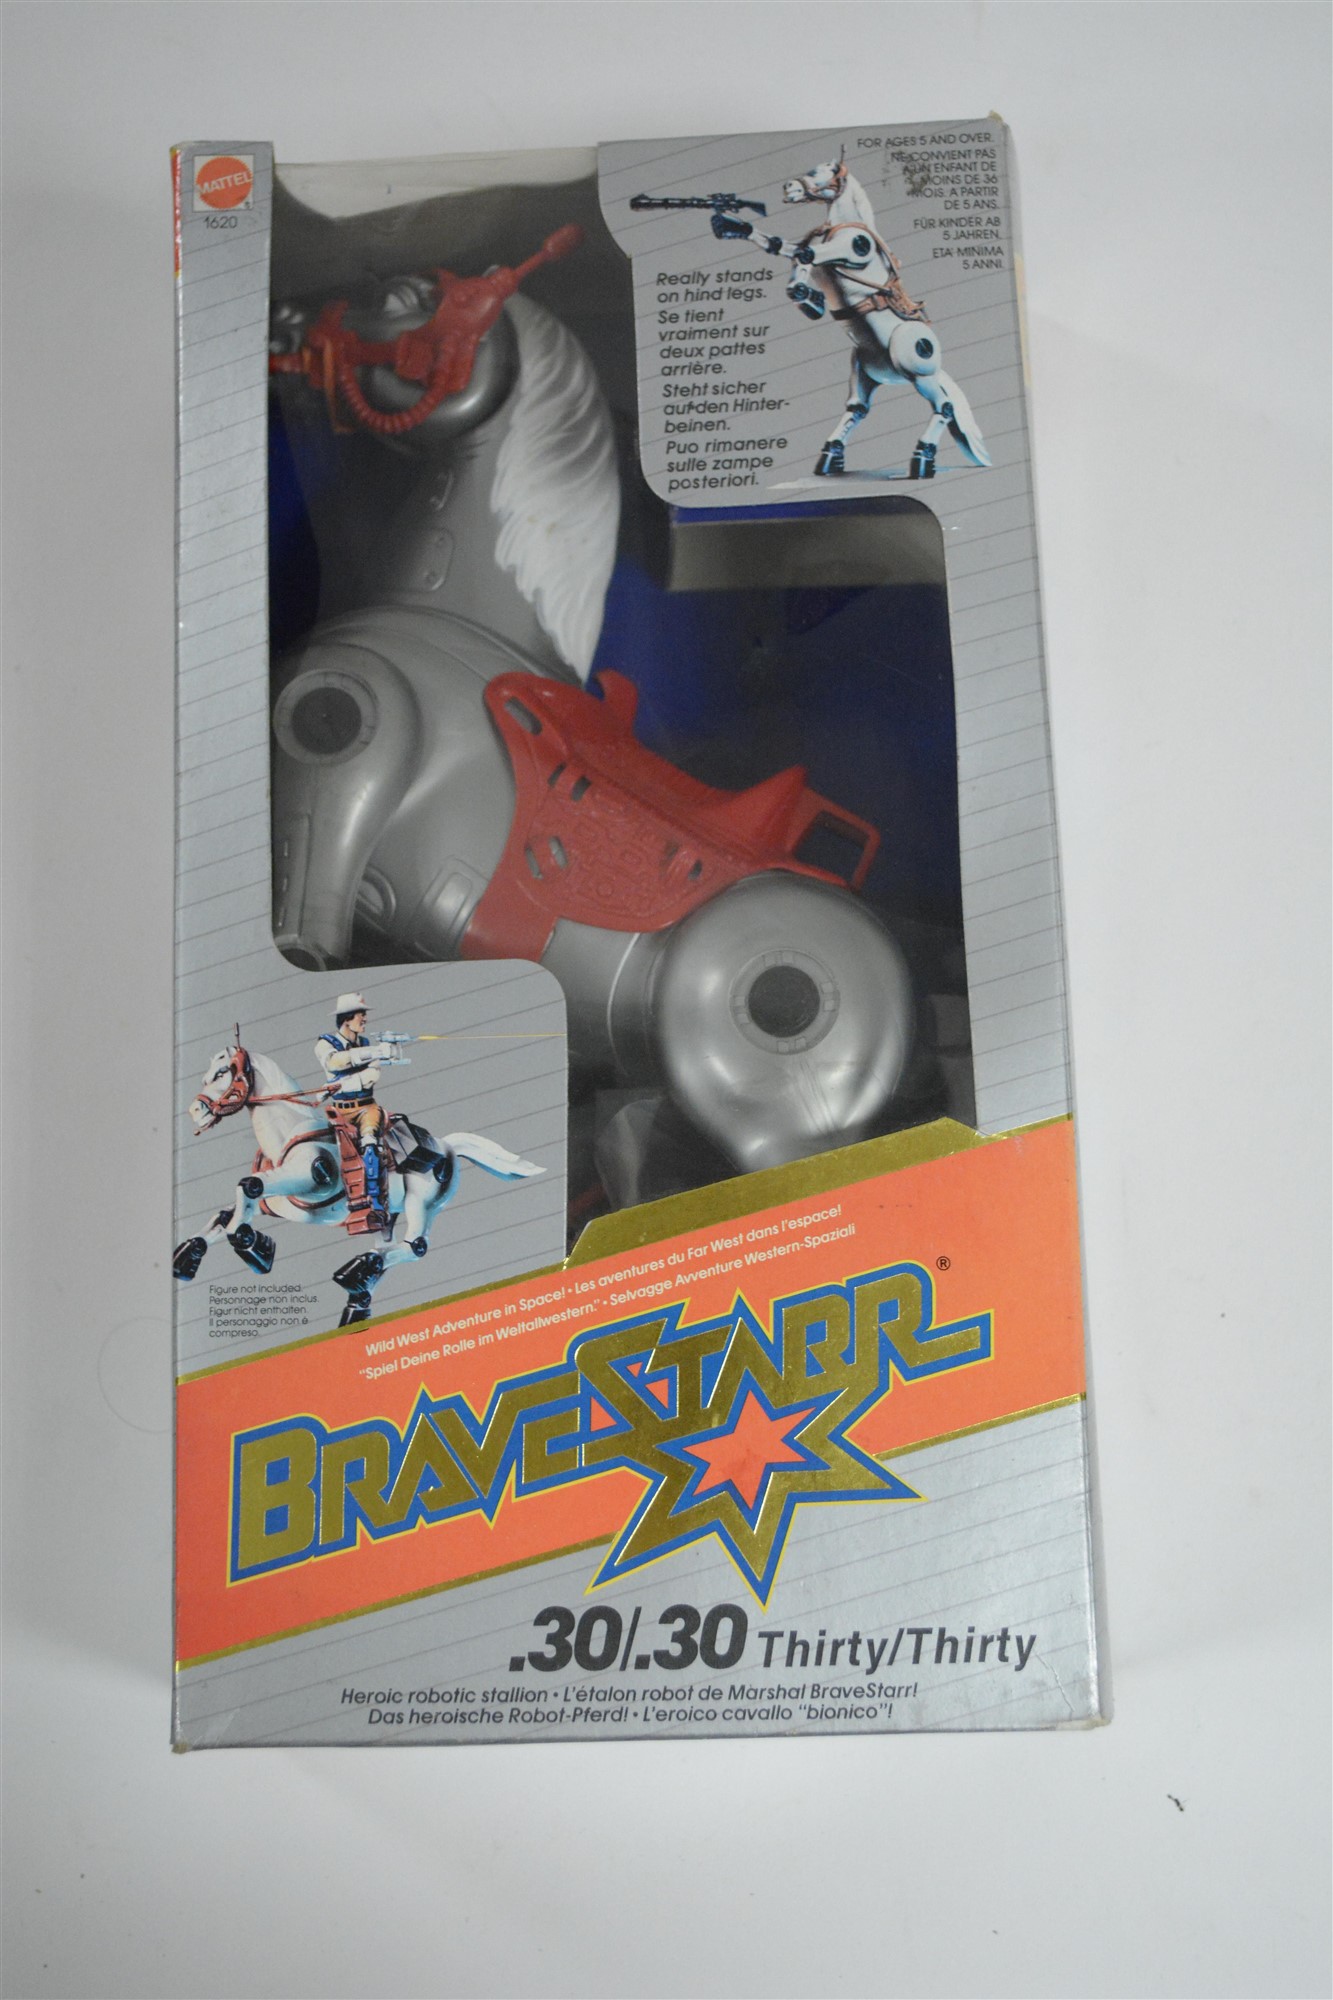 BraveStarr - Thirty/Thirty - Mattel